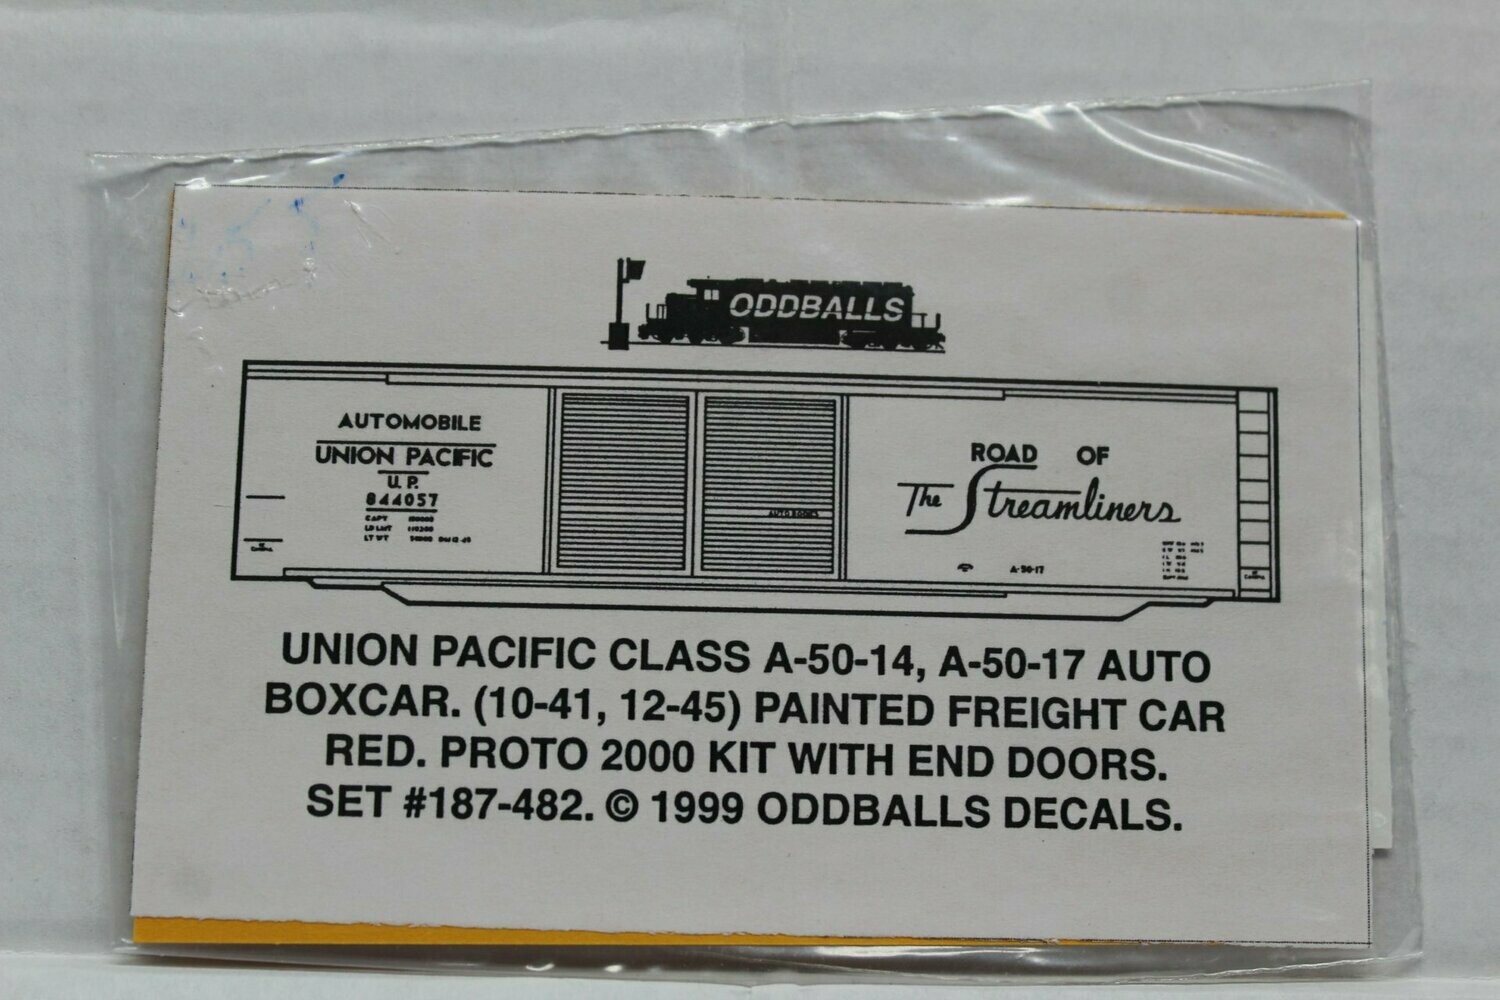 Union Pacific A50-14, A-50-17 (1941-45) Auto Boxcar Decal set ODDBALLS